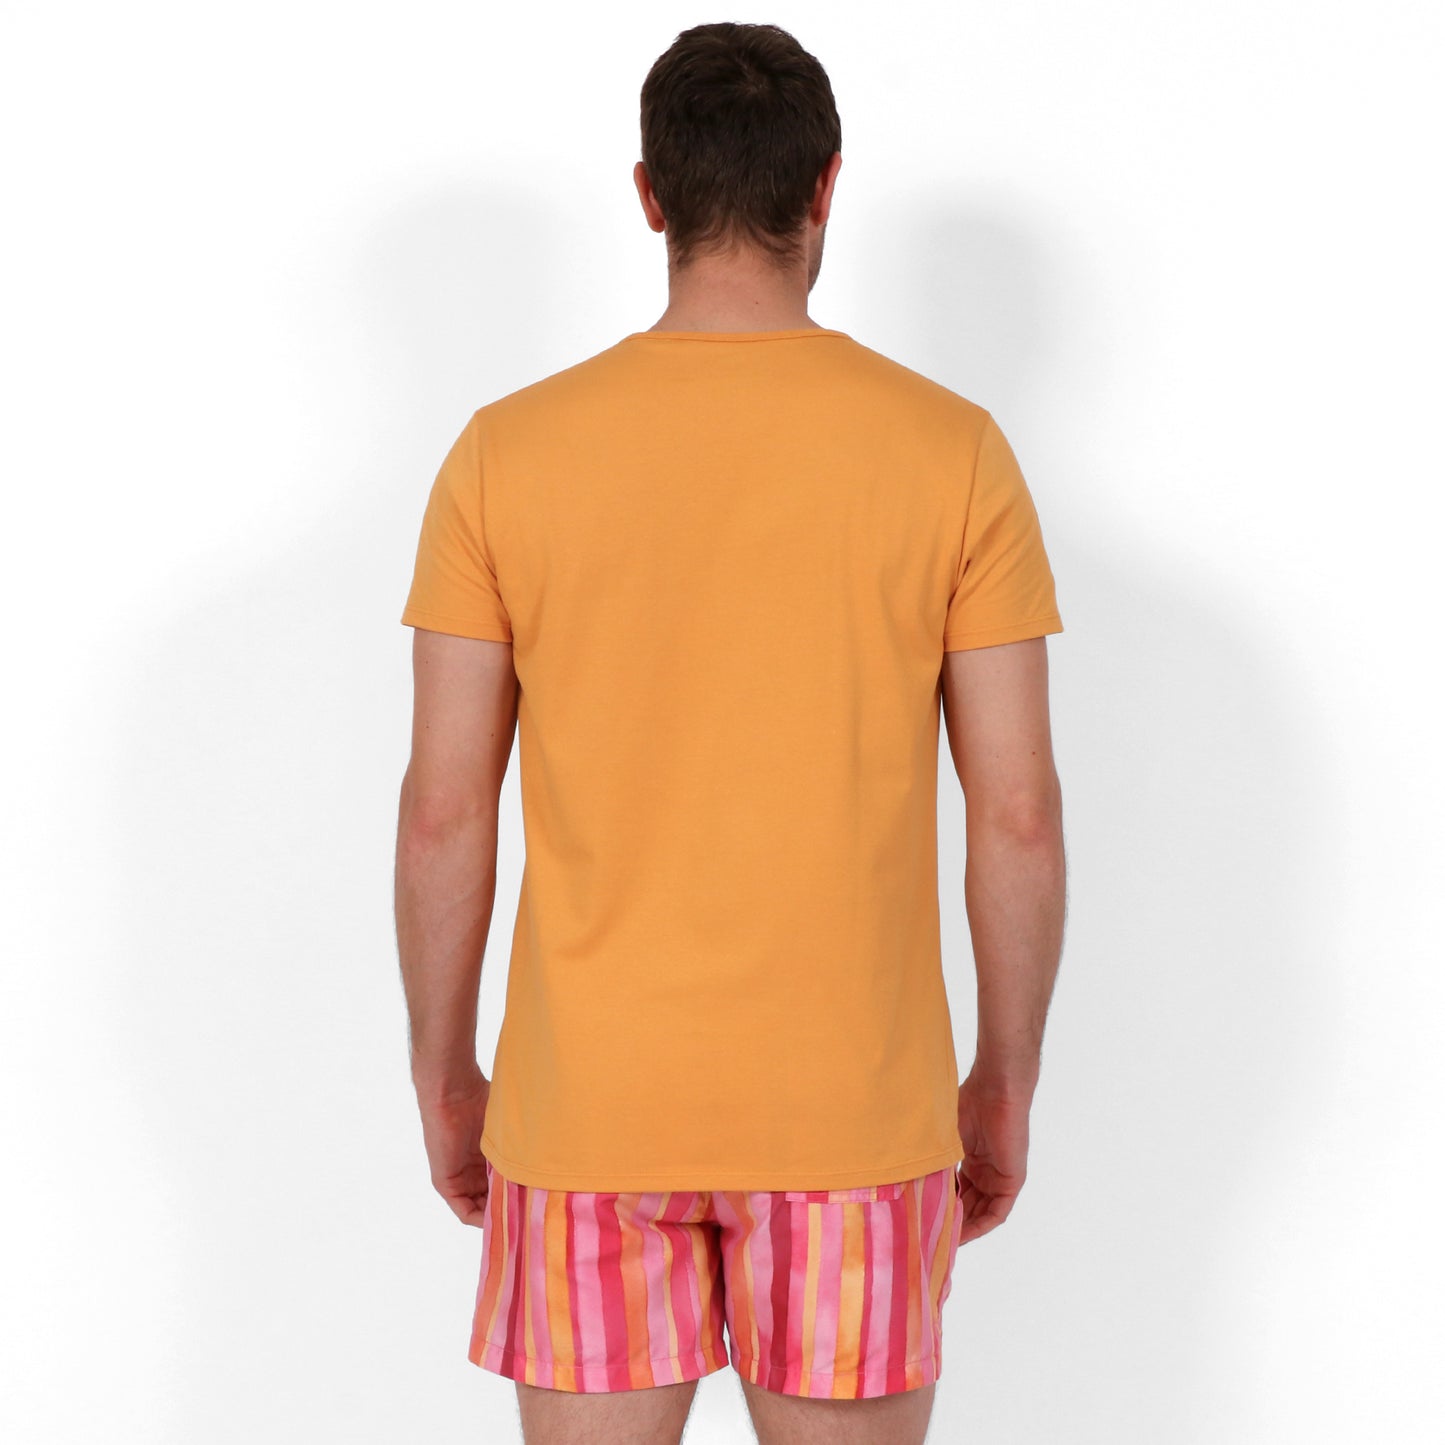 Original Weekend Organic Cotton Men's Pocket T-Shirt in Sunset Orange on Body Back View